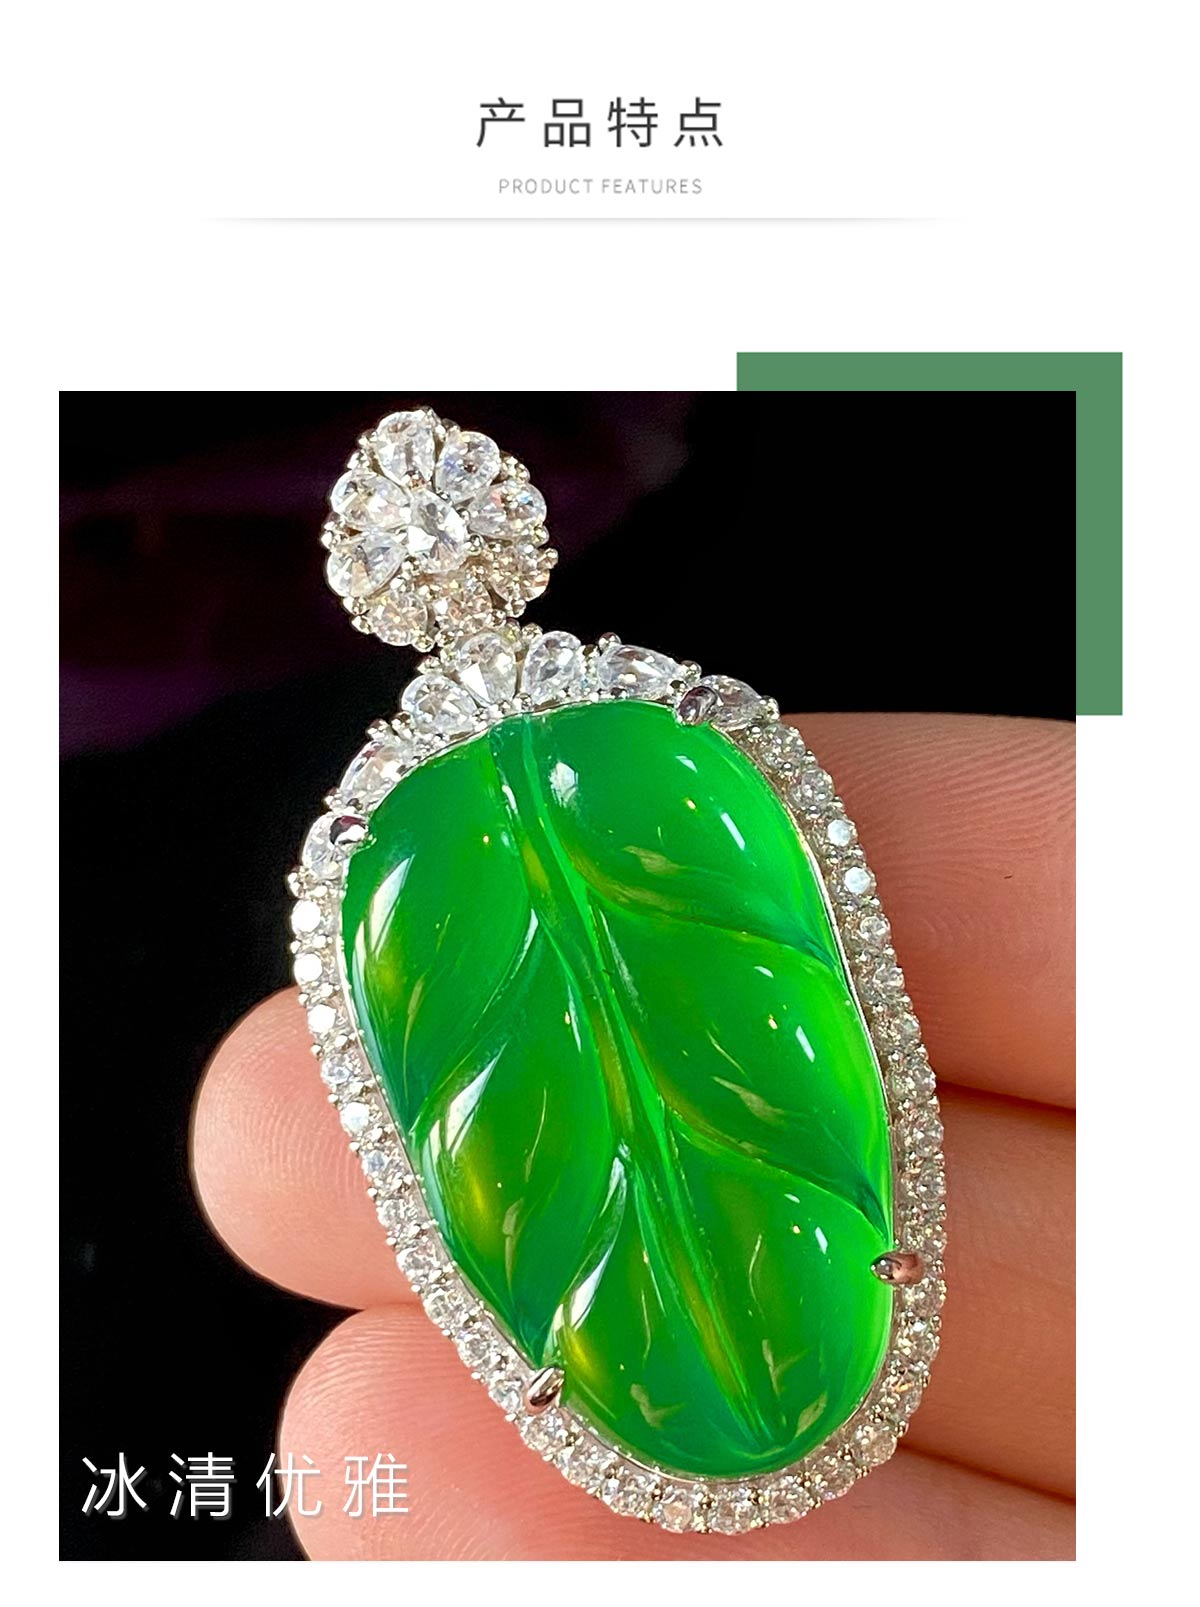 Bijoux espèces de glace brésilienne chrysoprase Agate Pendant Sweet Yang Green Leaf Leaf S925 argent comparable à la jadéite